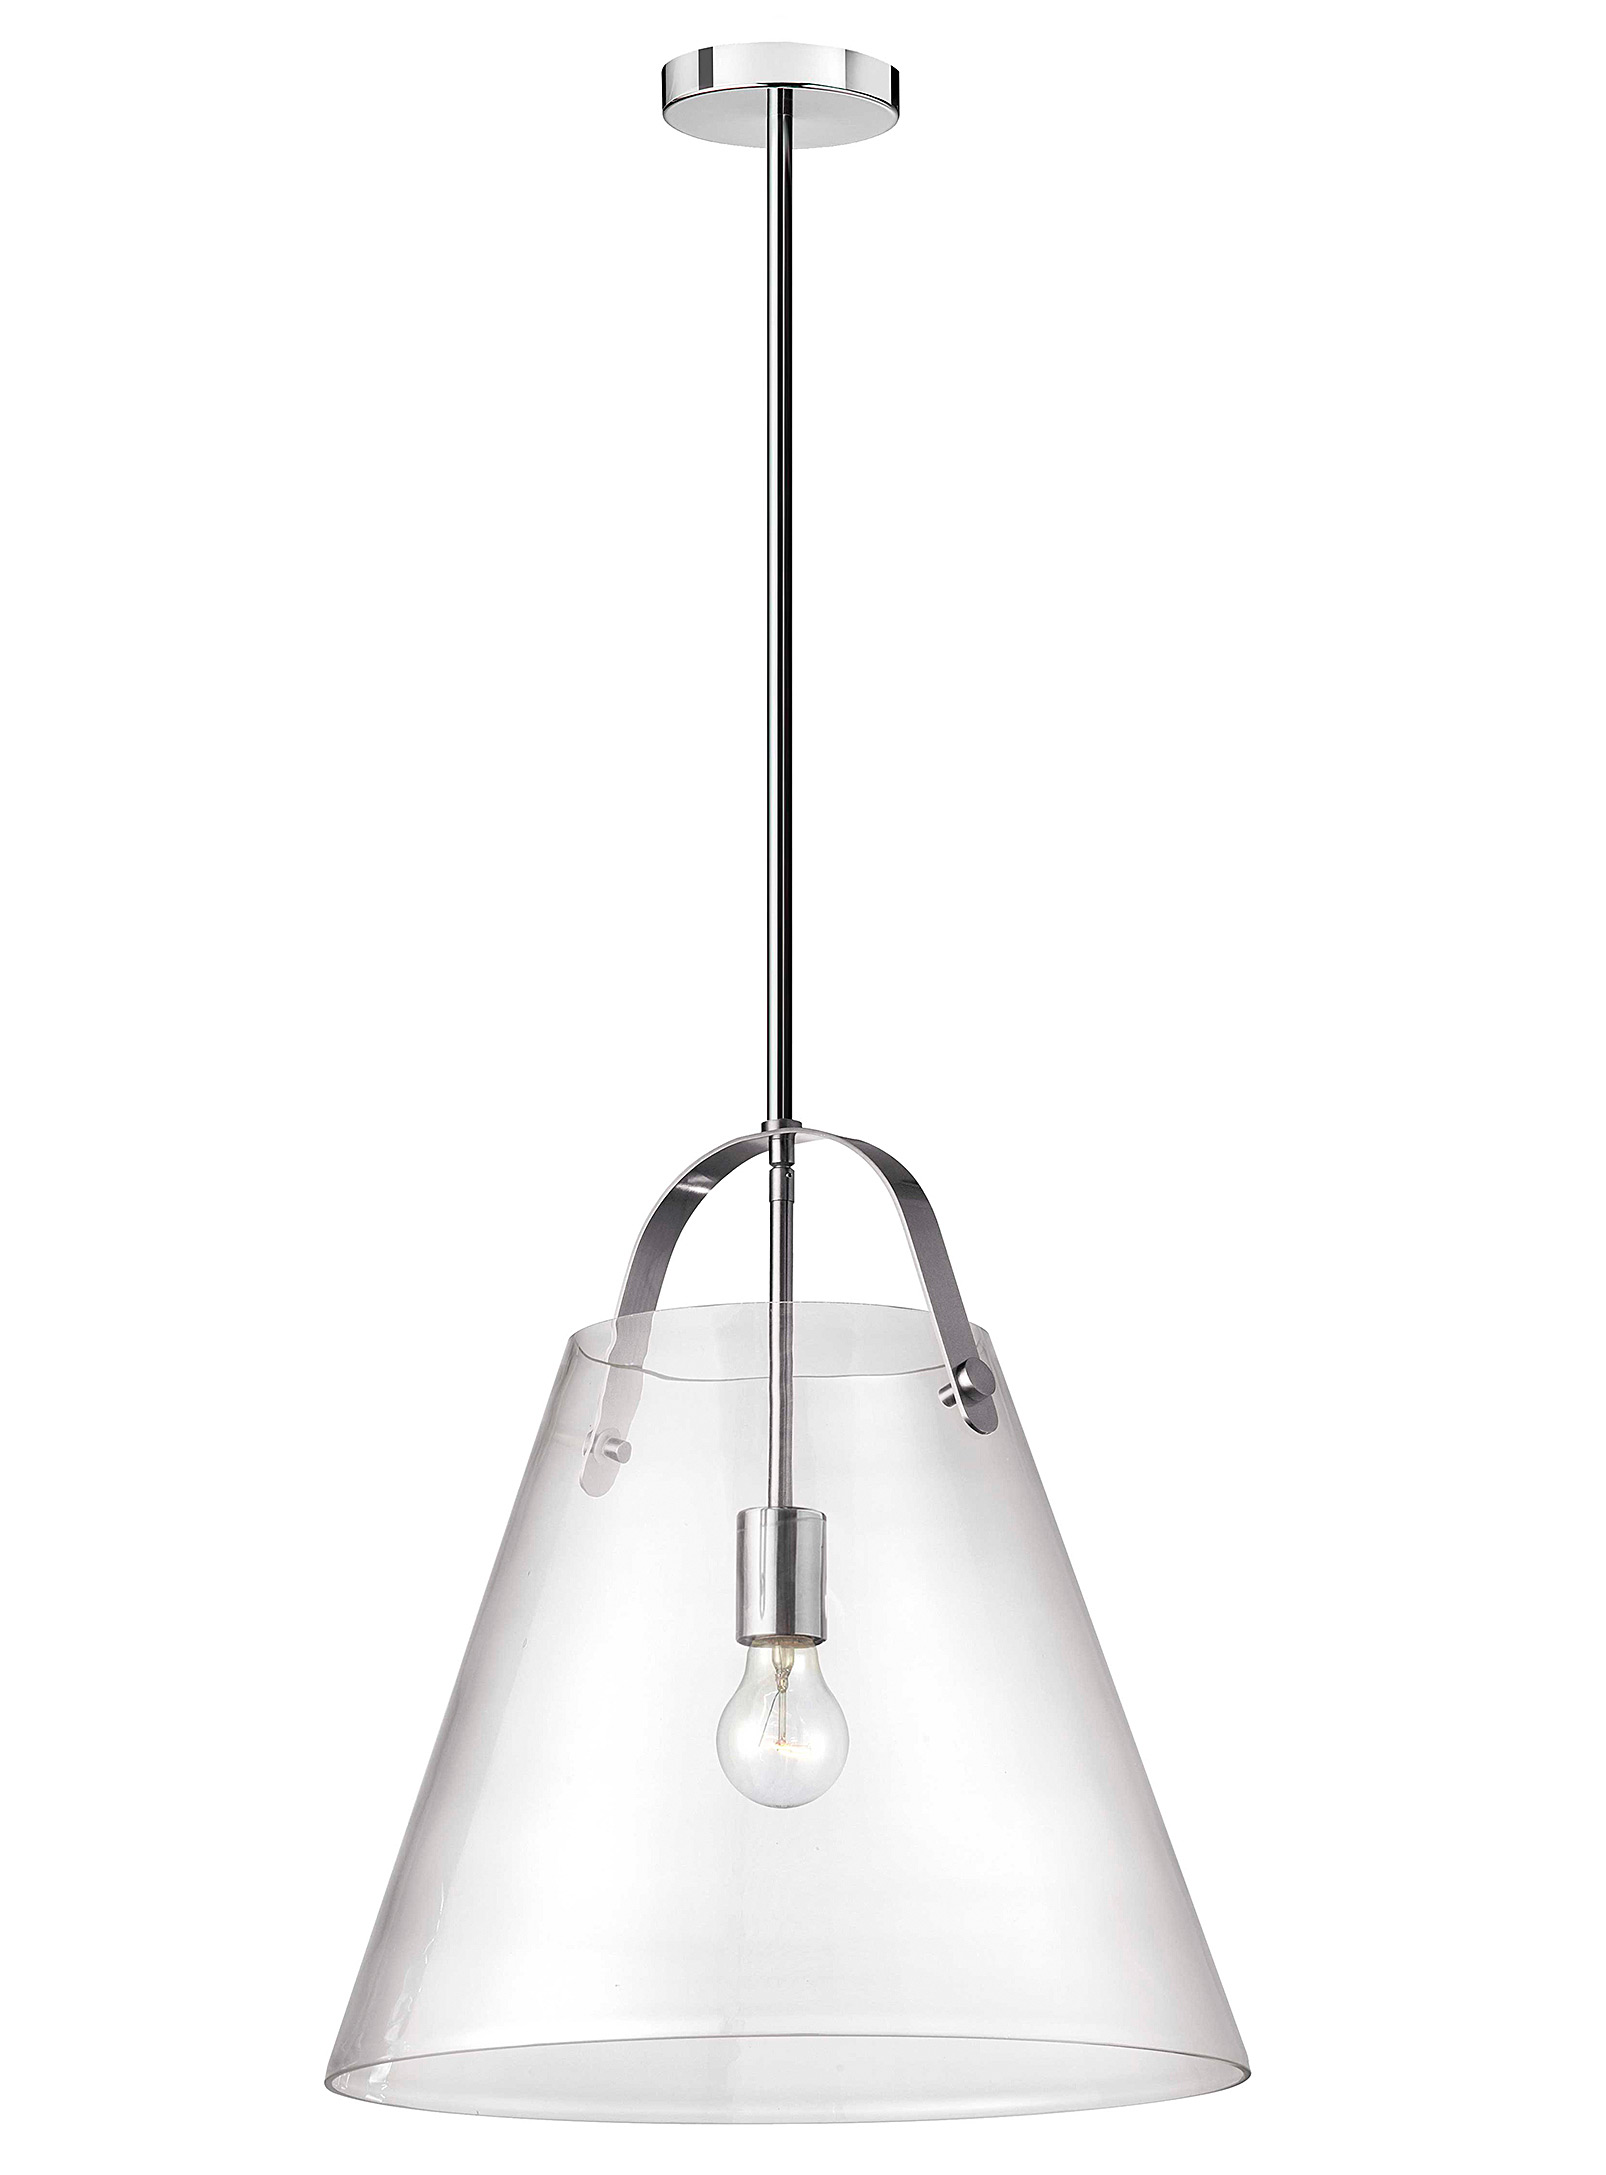 Simons Maison - Large crystalline chrome hanging lamp